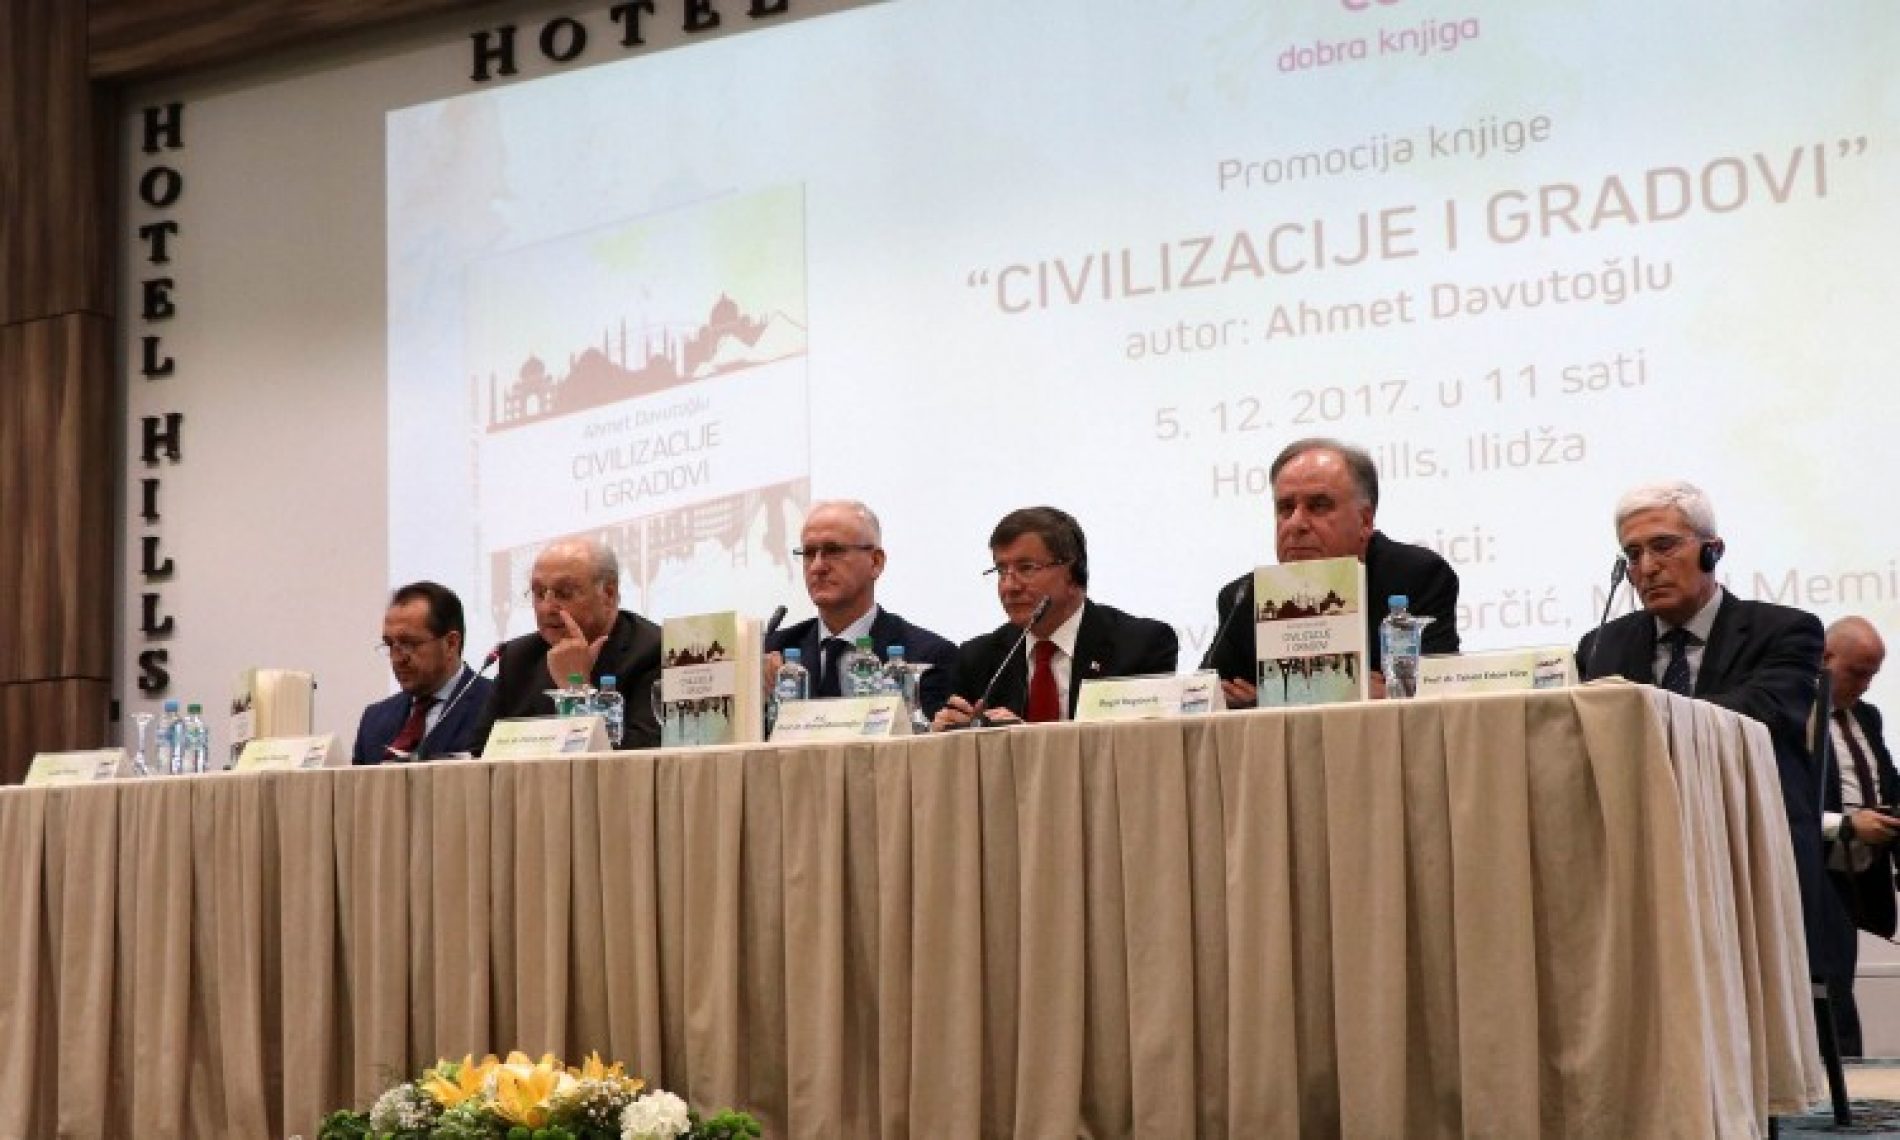 Davutoglu u Sarajevu predstavio svoju knjigu ‘Civilizacije i gradovi’